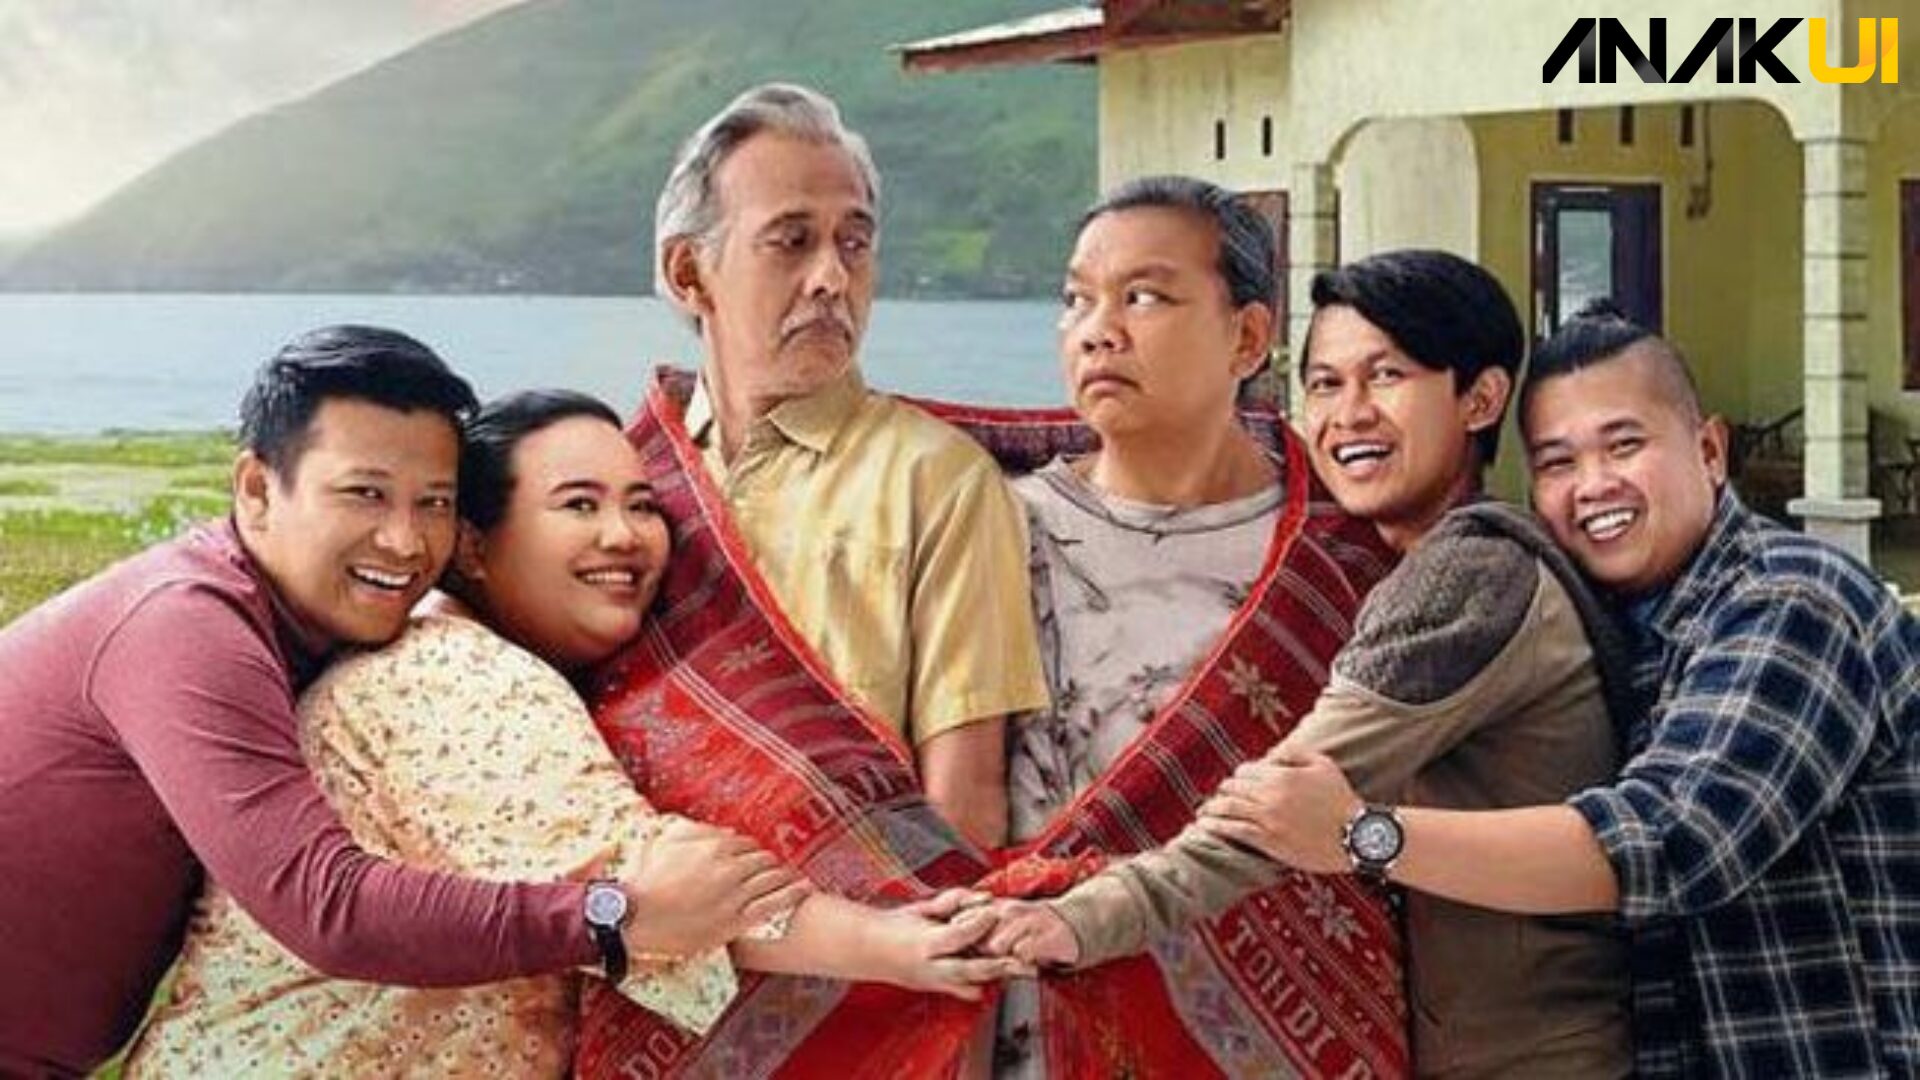 Rekomendasi Film Komedi Indonesia